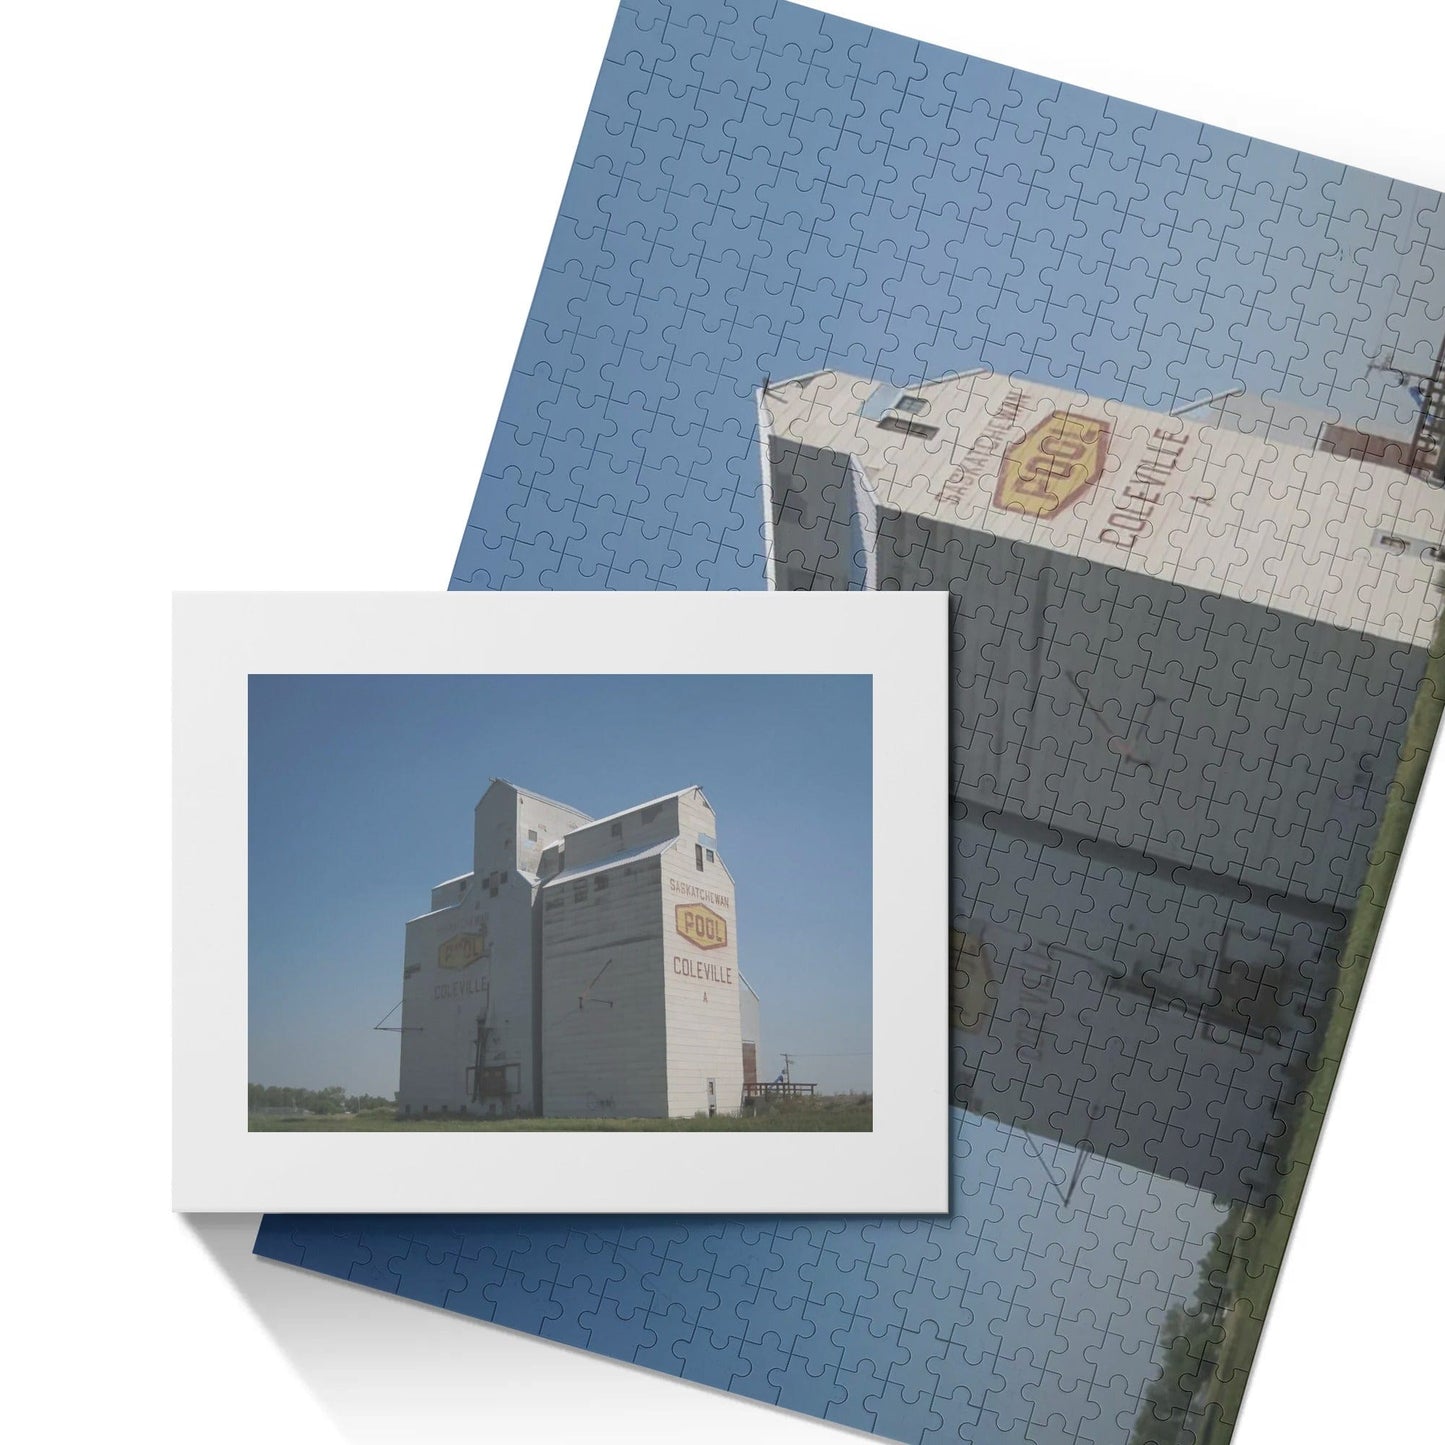 Canada Proud Jigsaw Puzzle Series: Coleville, Saskatchewan Grain Elevator (500 Pcs)